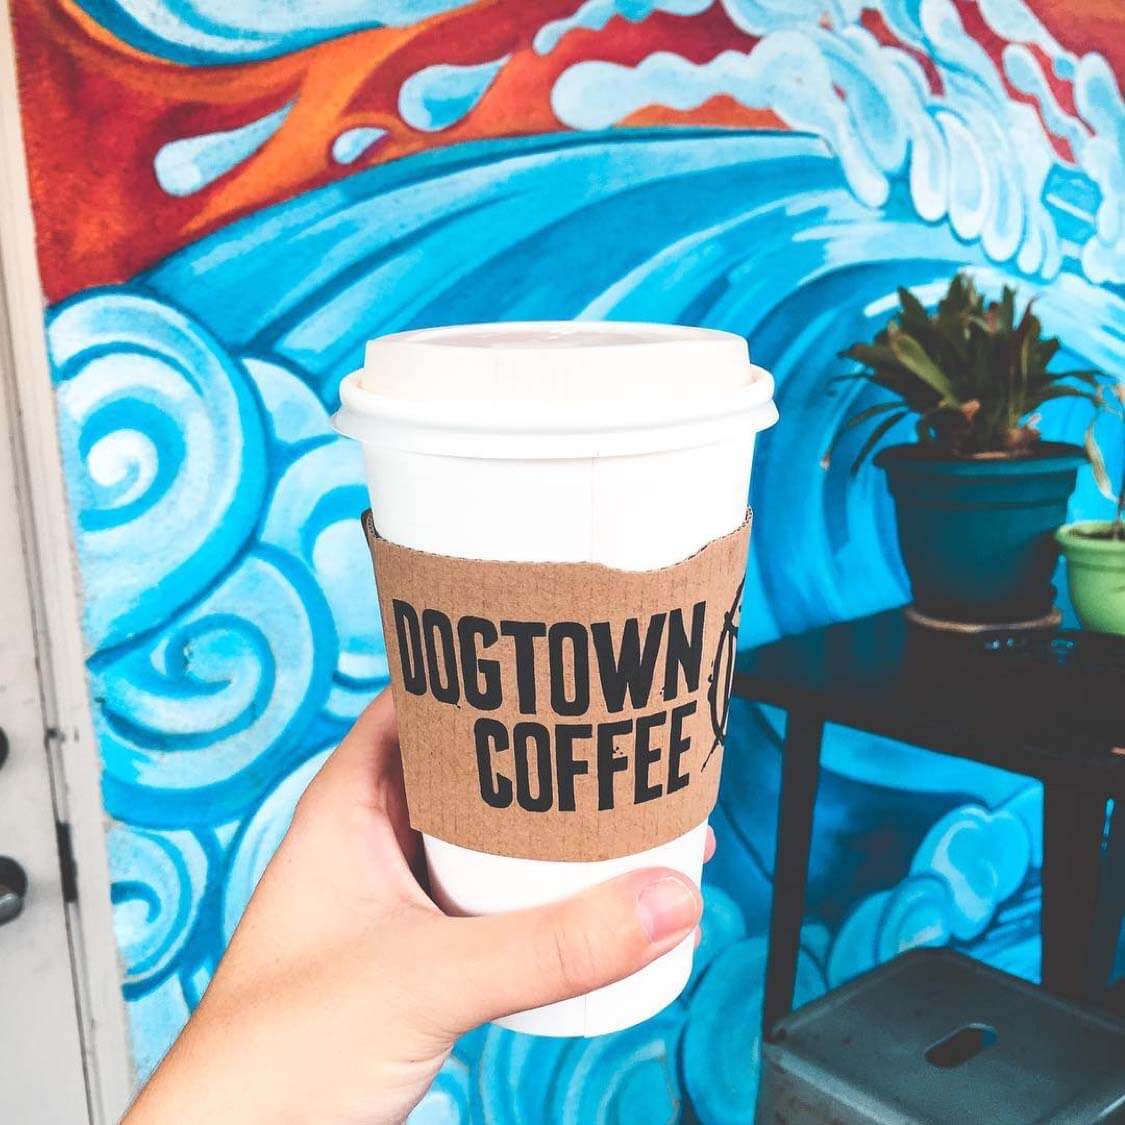 Dogtown Coffee matcha latte